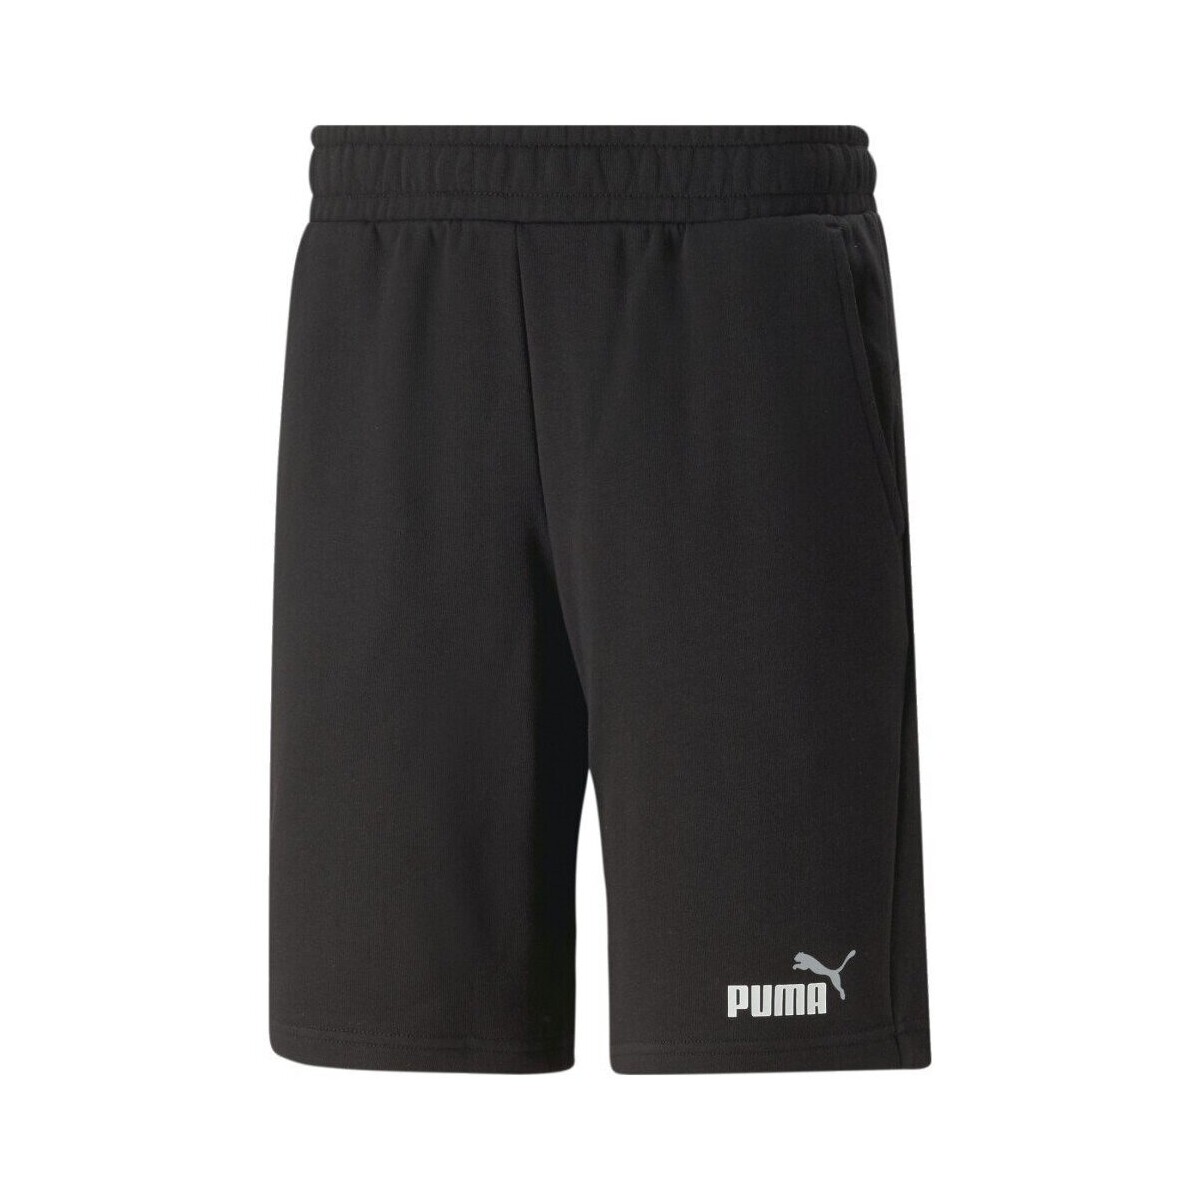 Abbigliamento Uomo Shorts / Bermuda Puma Shorts Uomo Essentials+ Two-Tone Nero